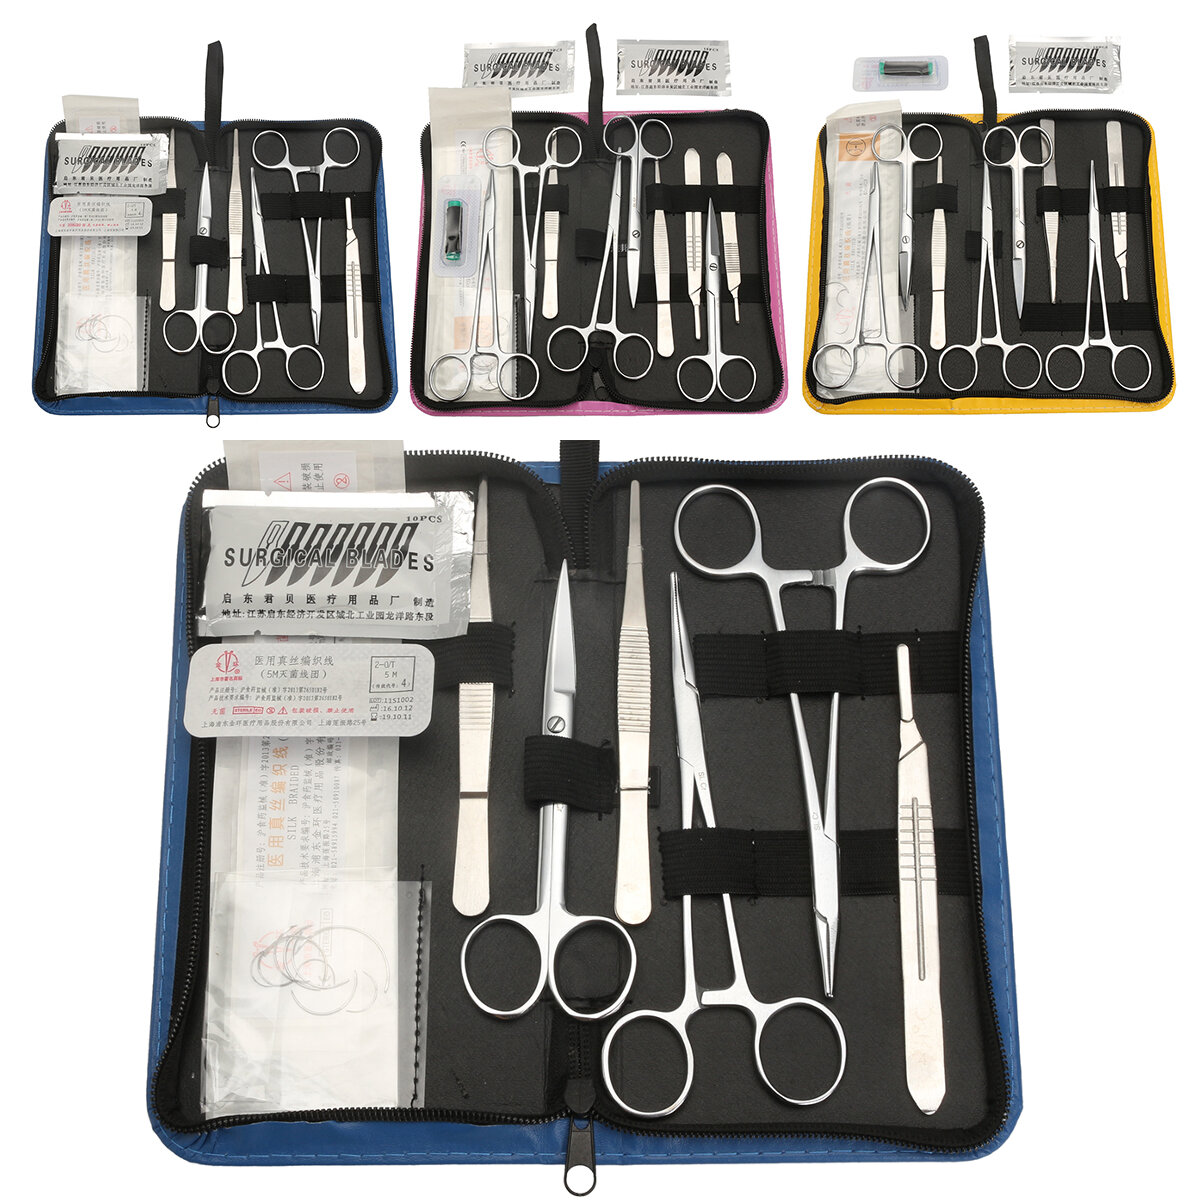 Practique el kit de sutura que incluye el paquete de curso de sutura desarrollado profesionalmente herramienta Bolsa